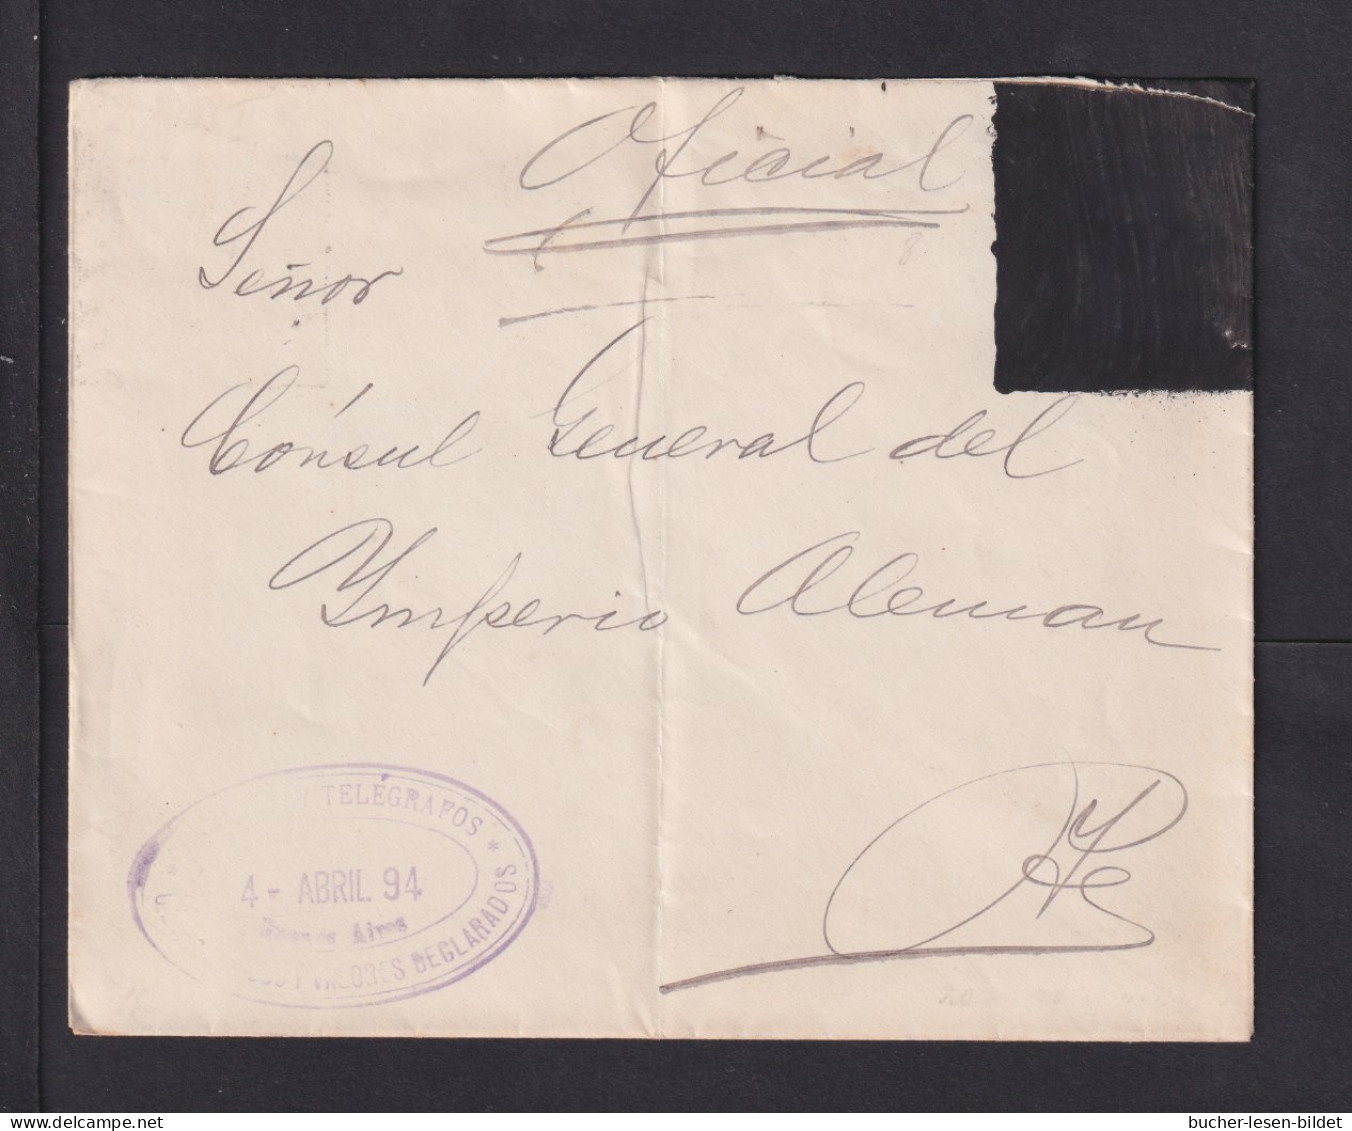 1894 - überdrucke Ganzsache Als Dienstbrief Gebraucht  - Lettres & Documents